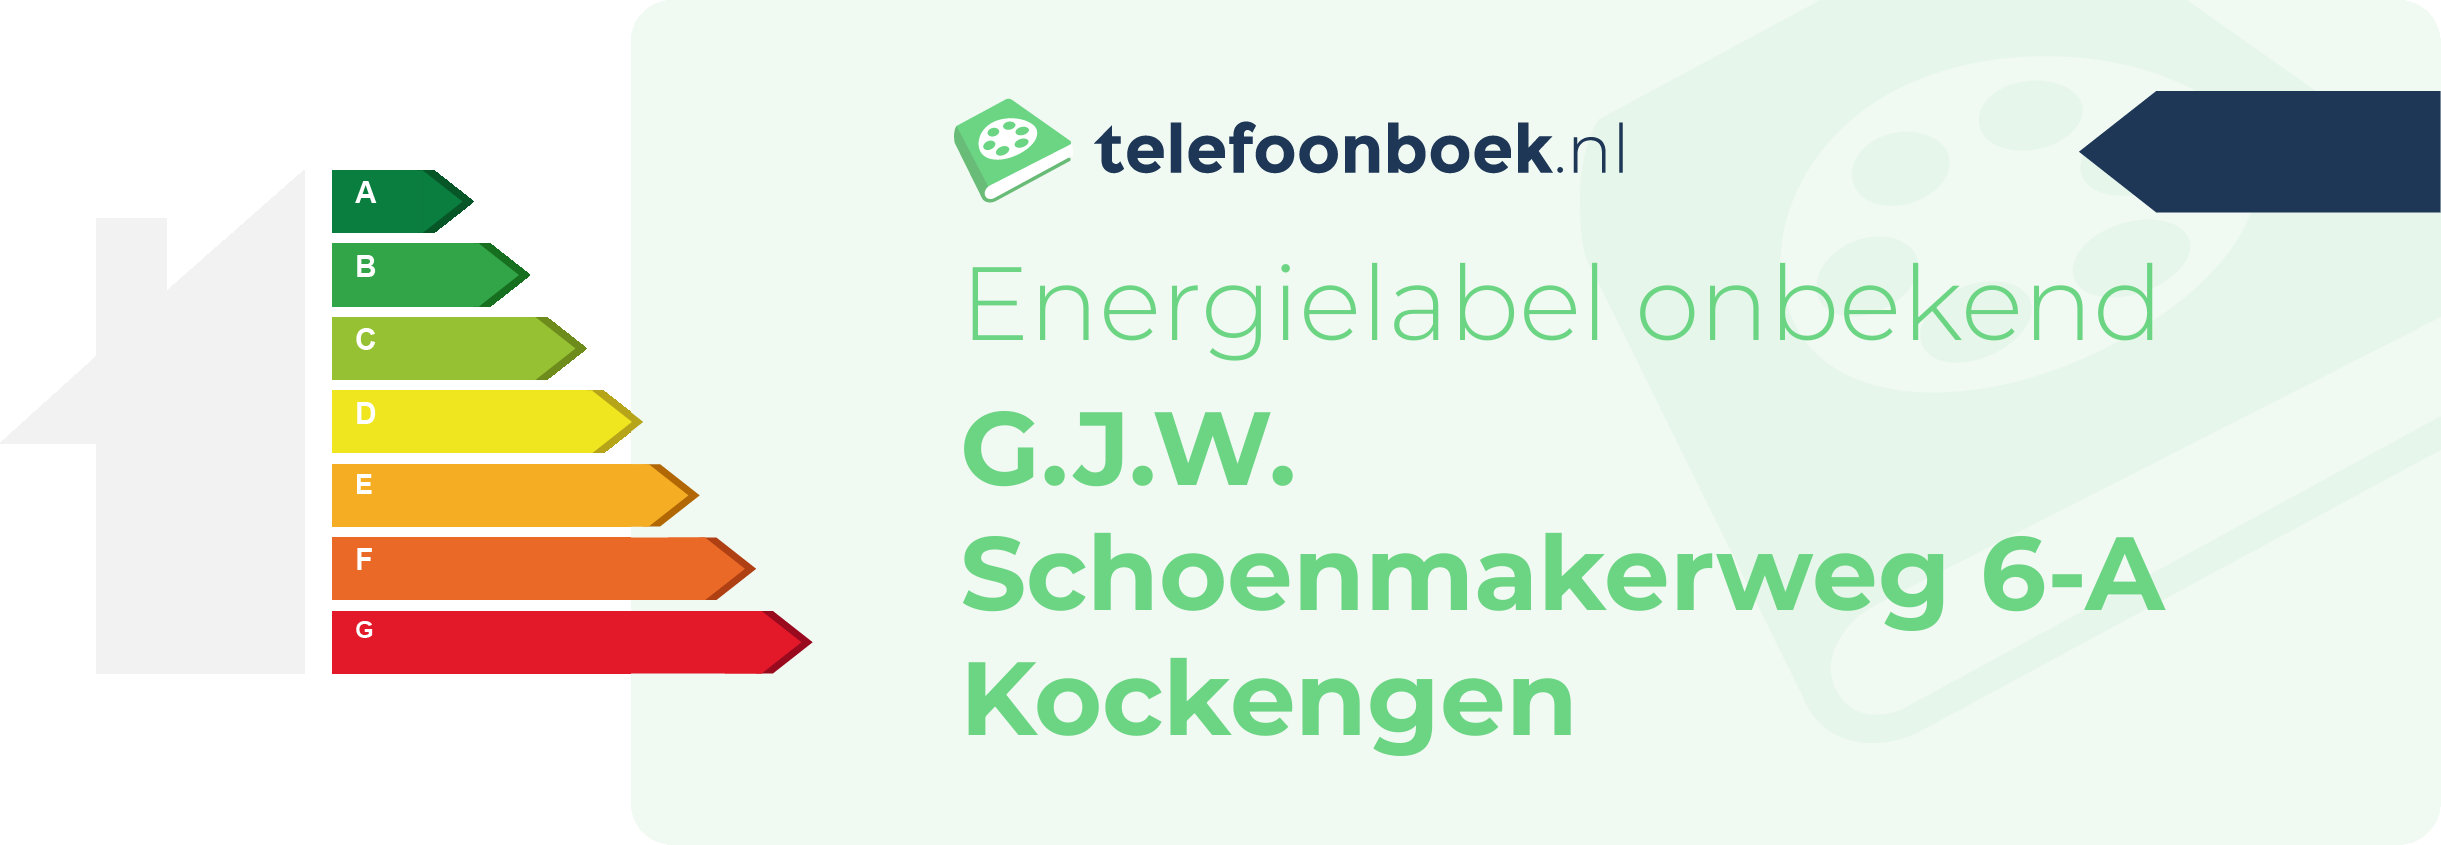 Energielabel G.J.W. Schoenmakerweg 6-A Kockengen